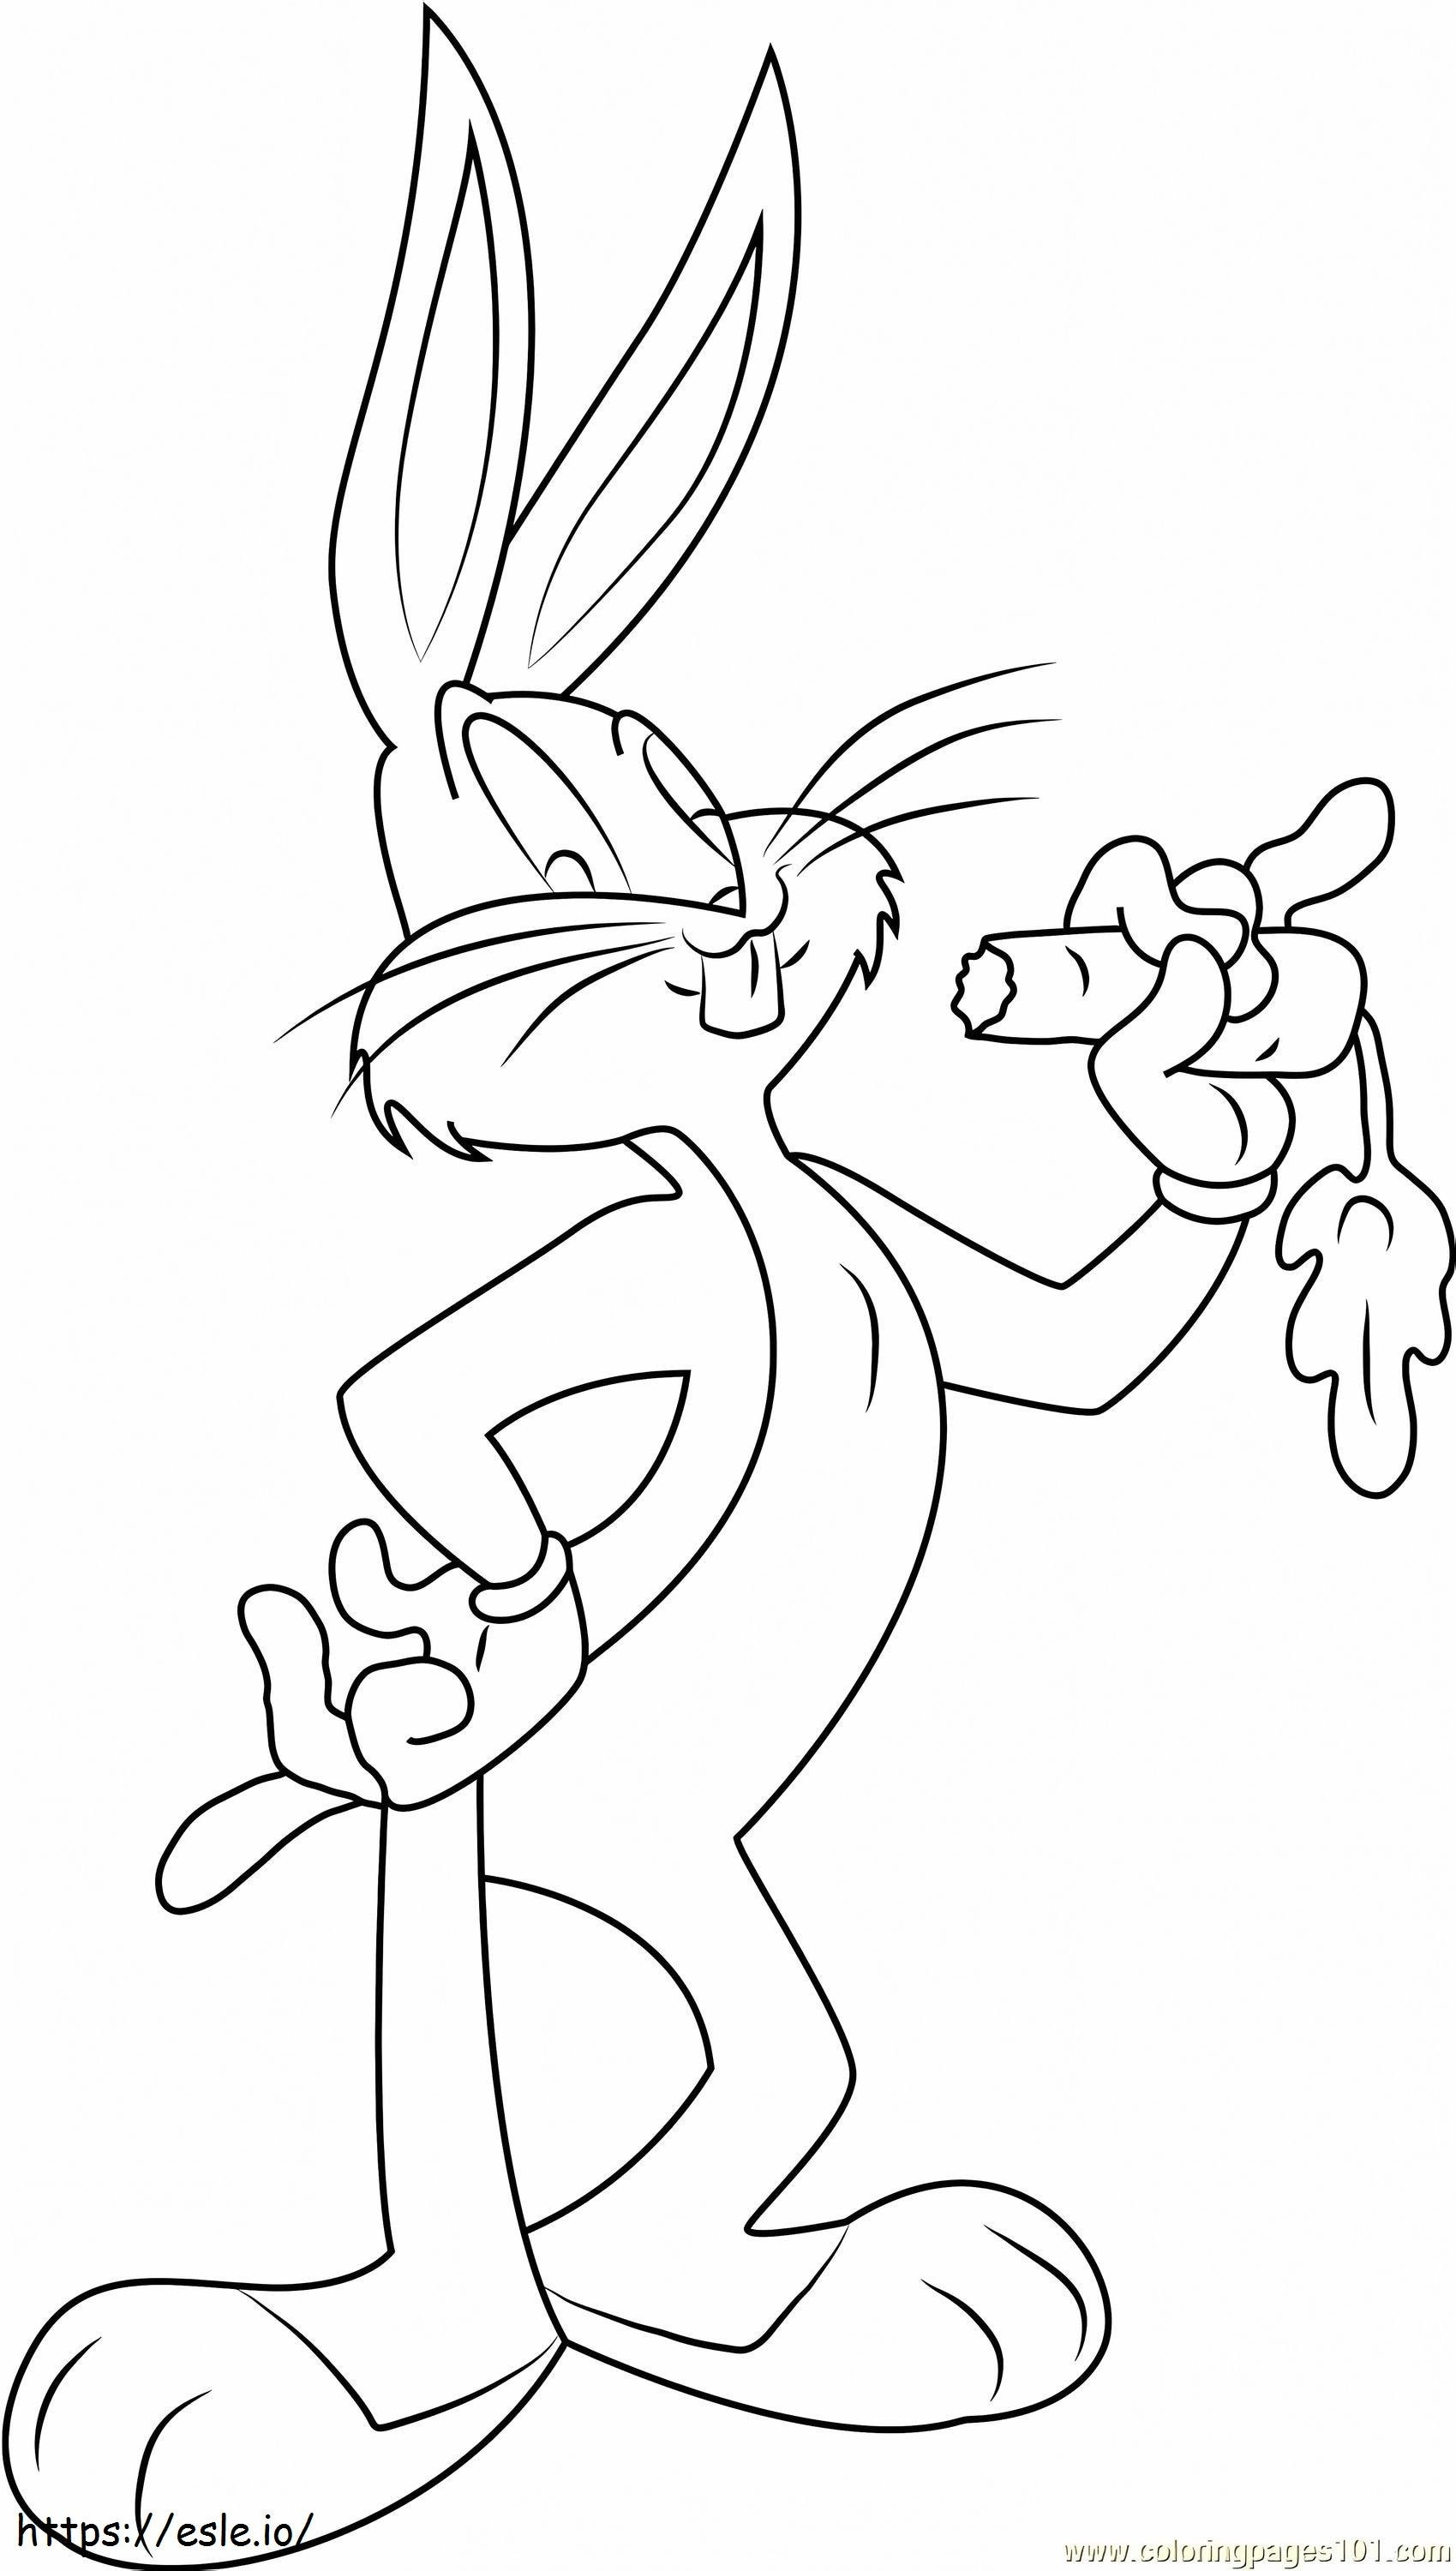 Coloriage _Bugs Bunny mangeant des carottes1 à imprimer dessin